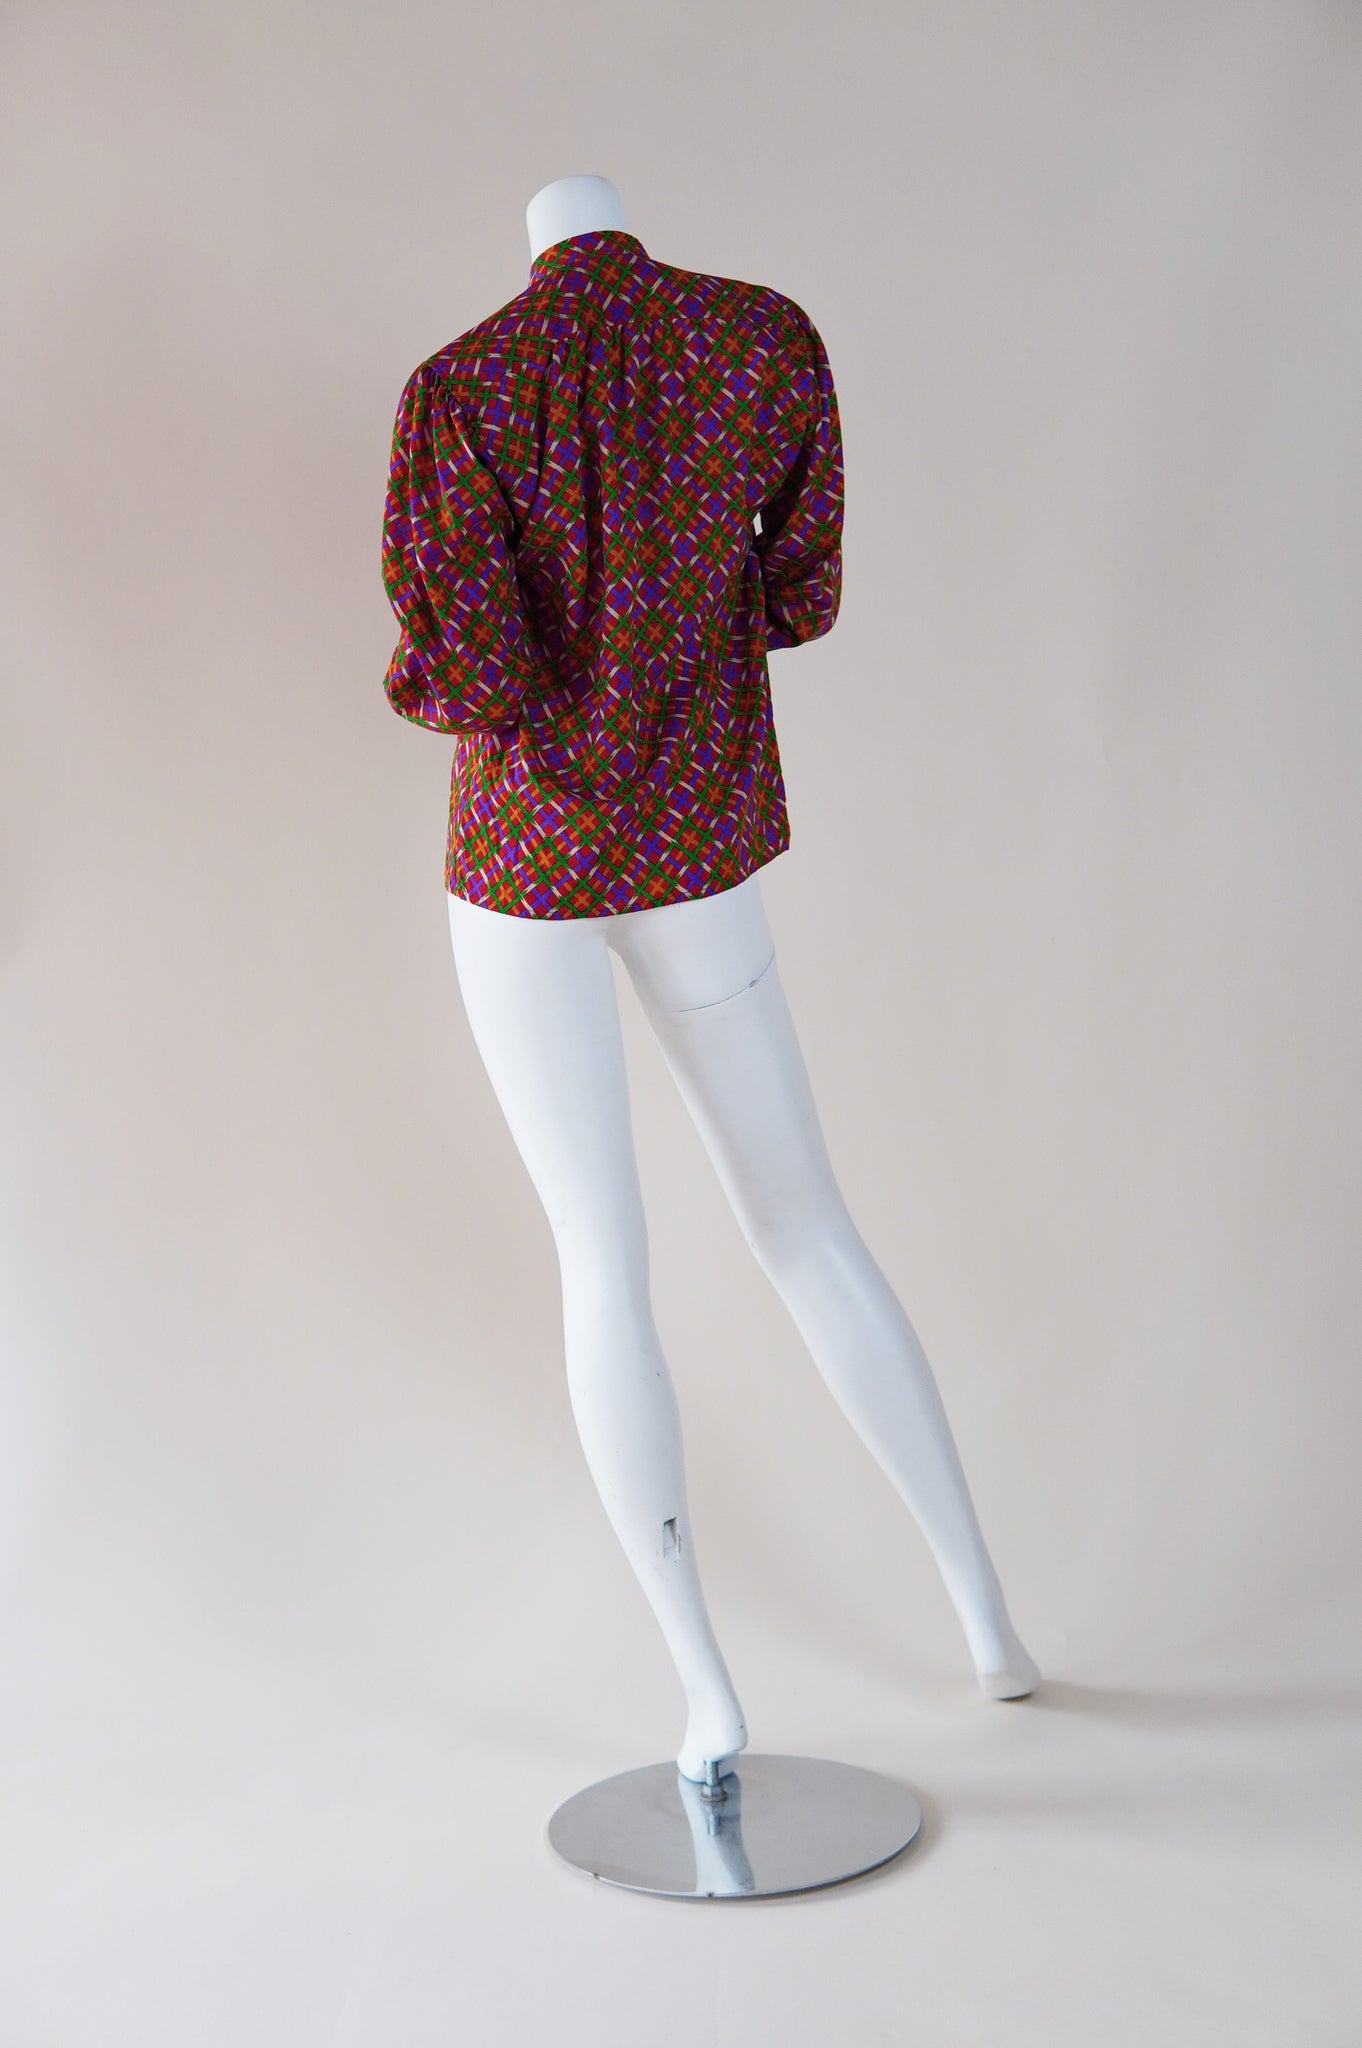 Yves Saint Laurent Rive Gauche 1970s blouse - XS/S